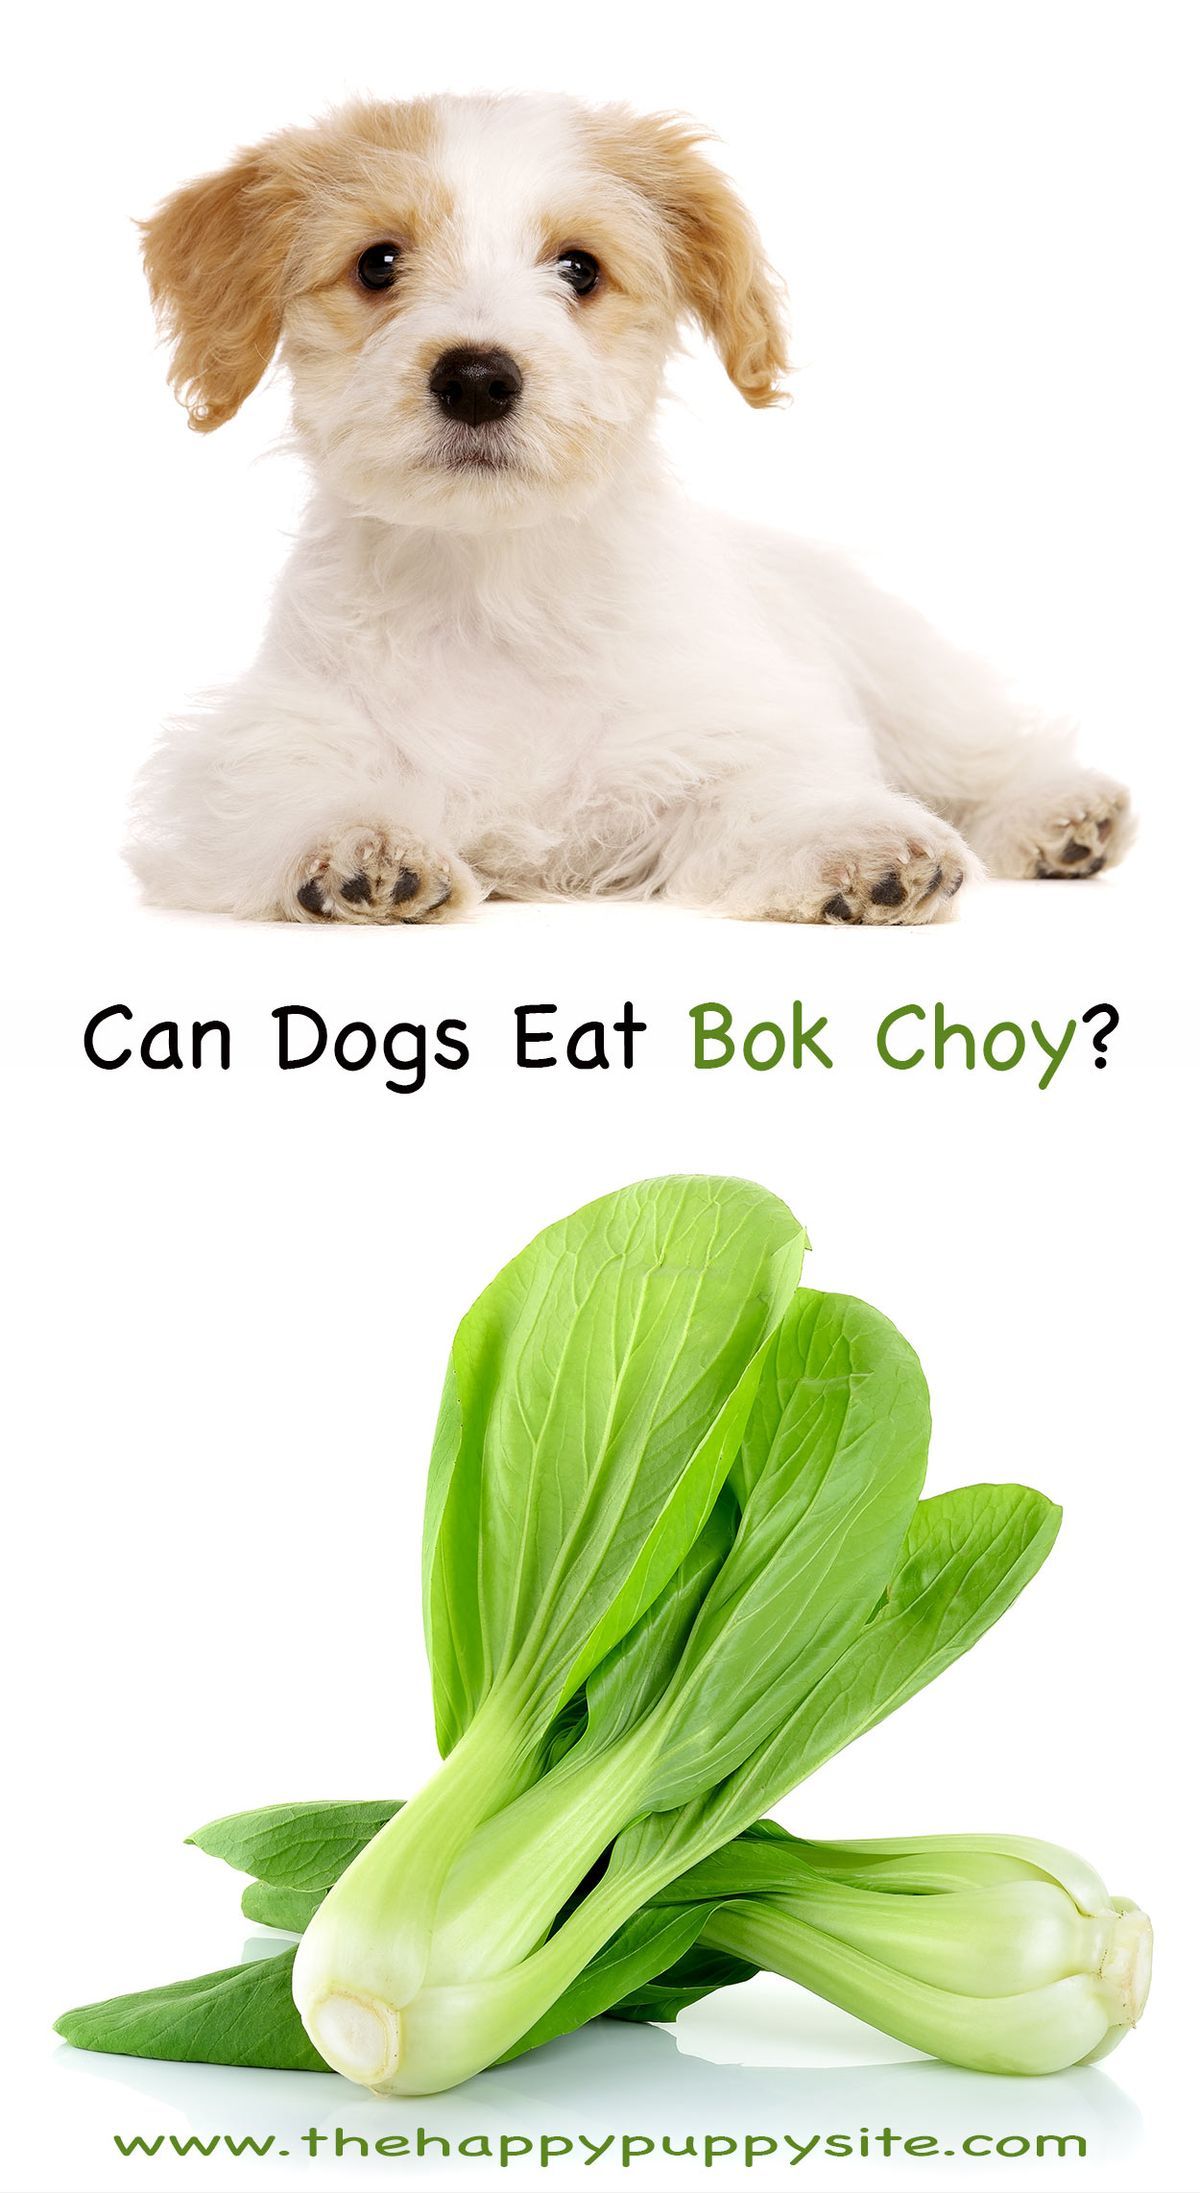 Les chiens peuvent-ils manger du bok choy